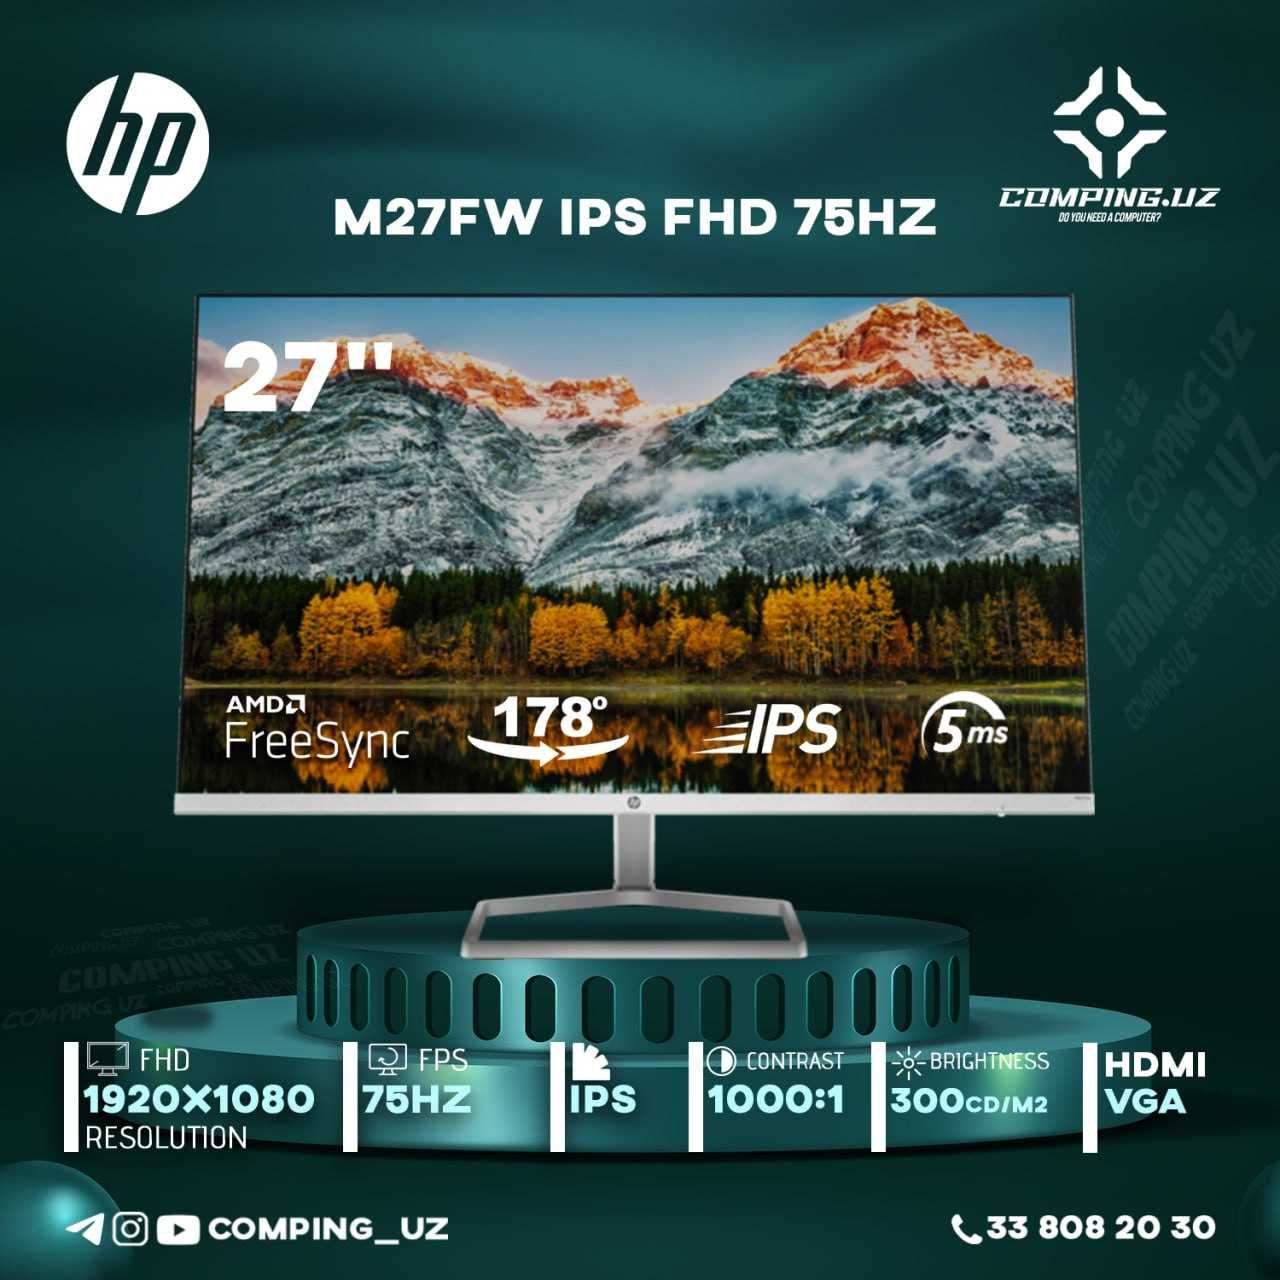 HP M27FW 75Hz FHD ips